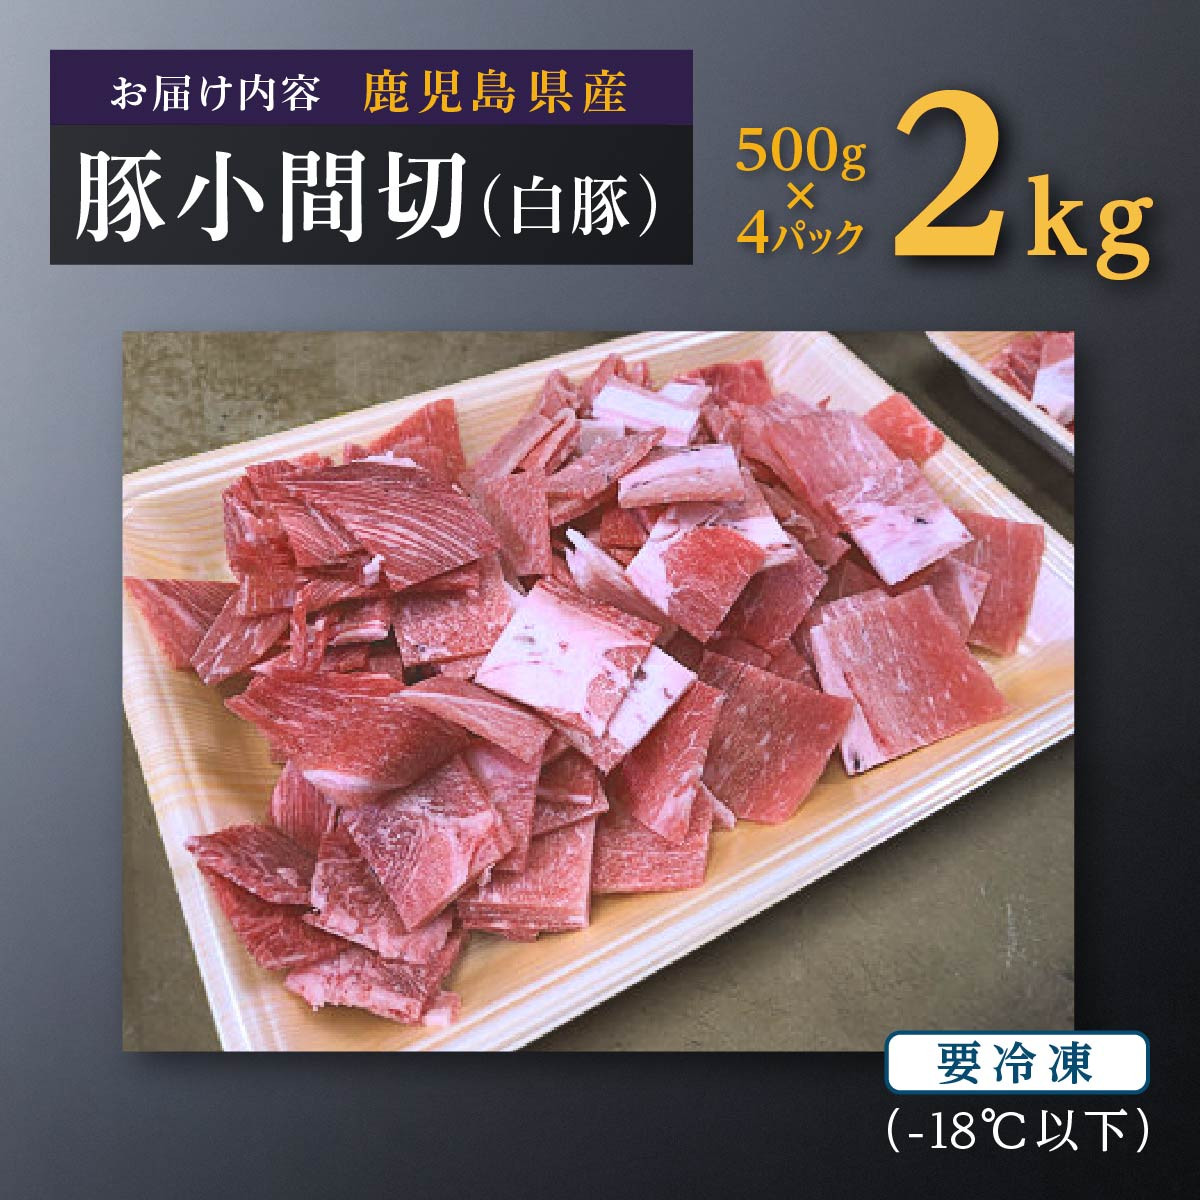 数量限定】鹿児島県産豚肉小間切(白豚) 500g×4(2kg)